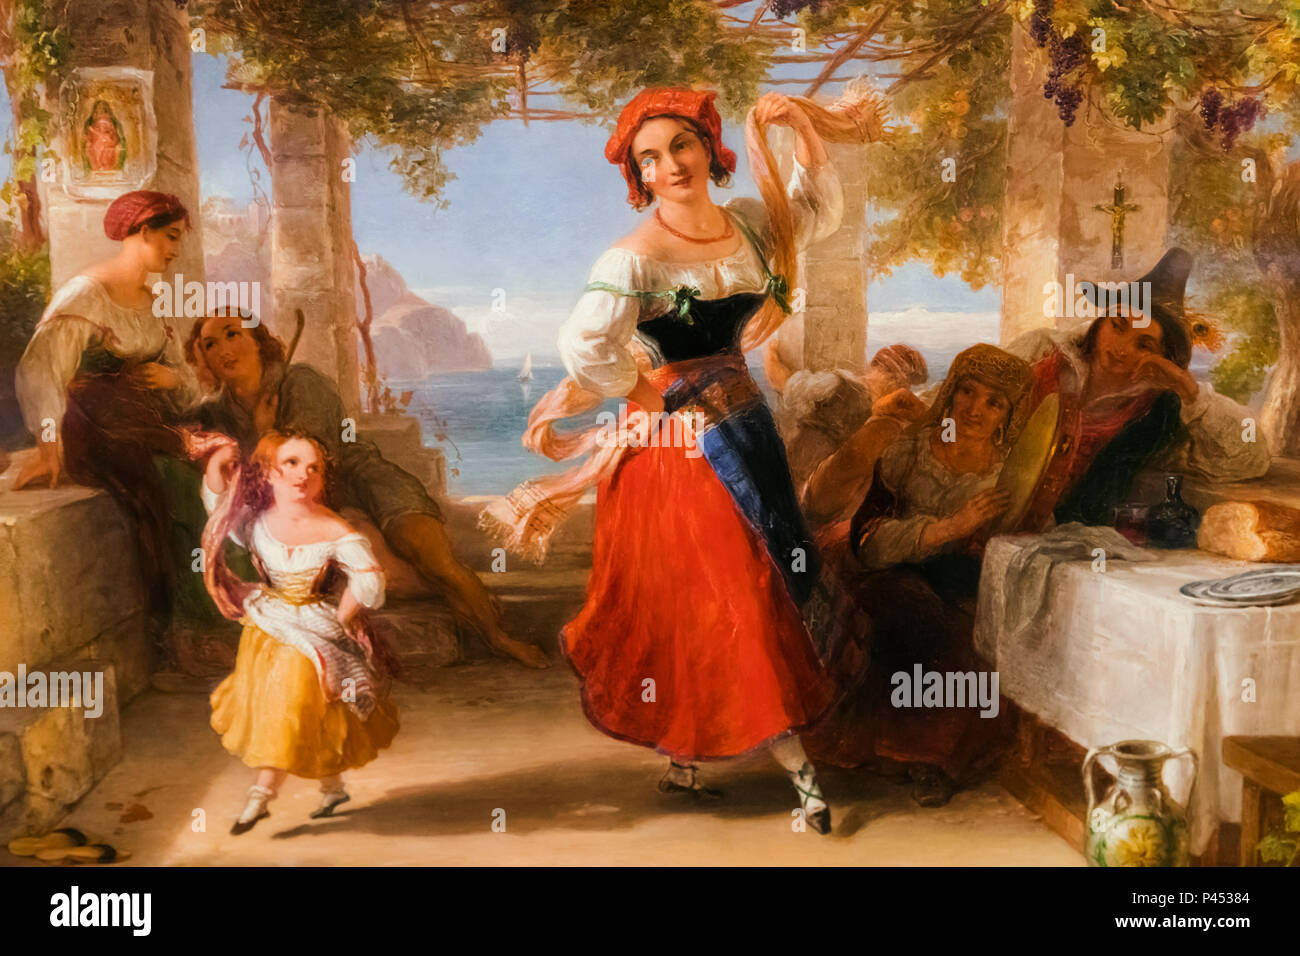 Peinture d'une mère italienne enseigner son enfant la tarentelle par Thomas Uwins daté 1824 Banque D'Images